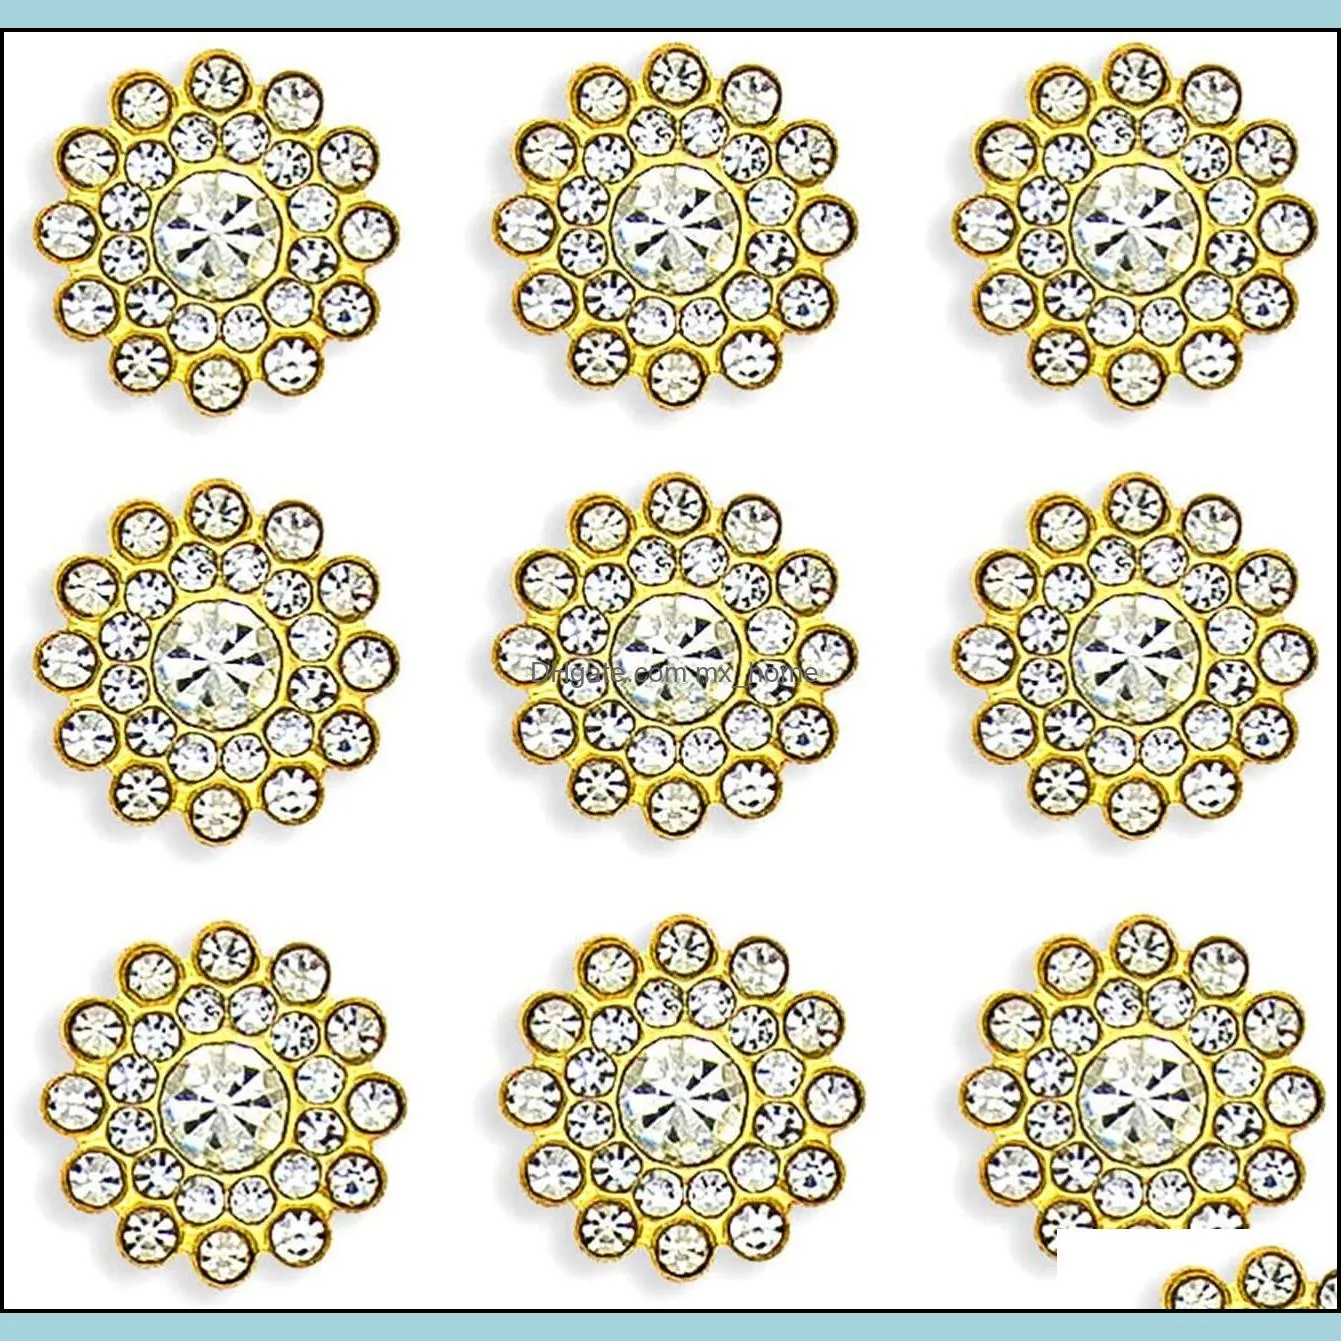 50 pcs Rhinestone Embellishments Crystal Decoration Brooch Button Flatback DIY Craft for Flower Headband Dress Accessory 14mm (Silver)